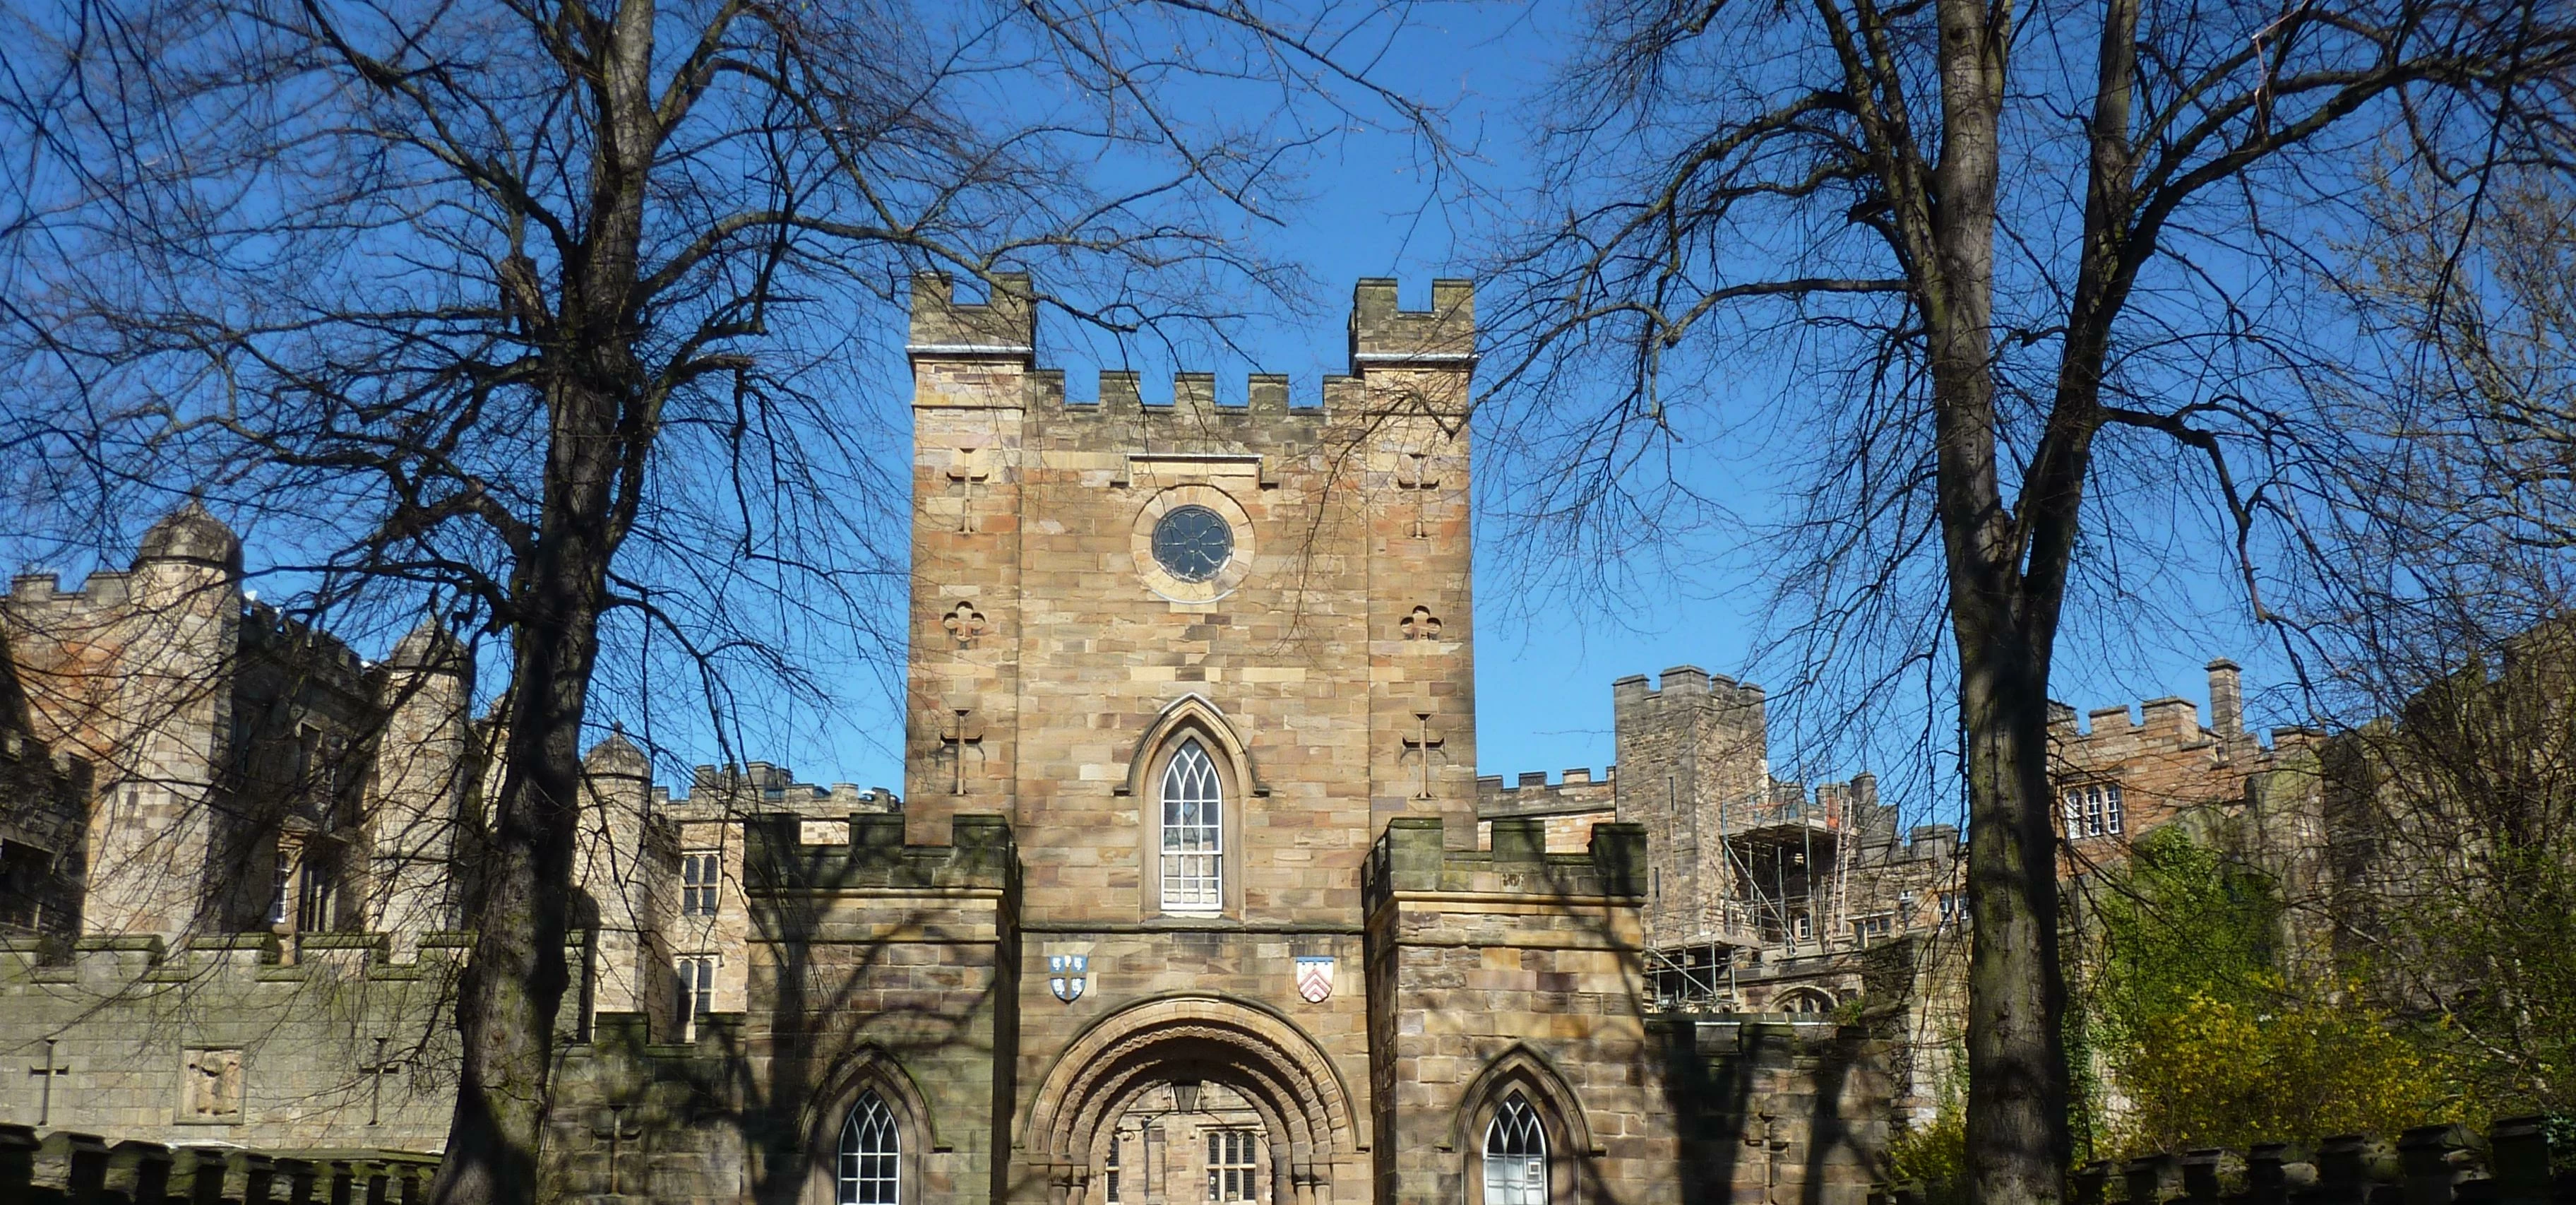 Entrance to Durham Castle